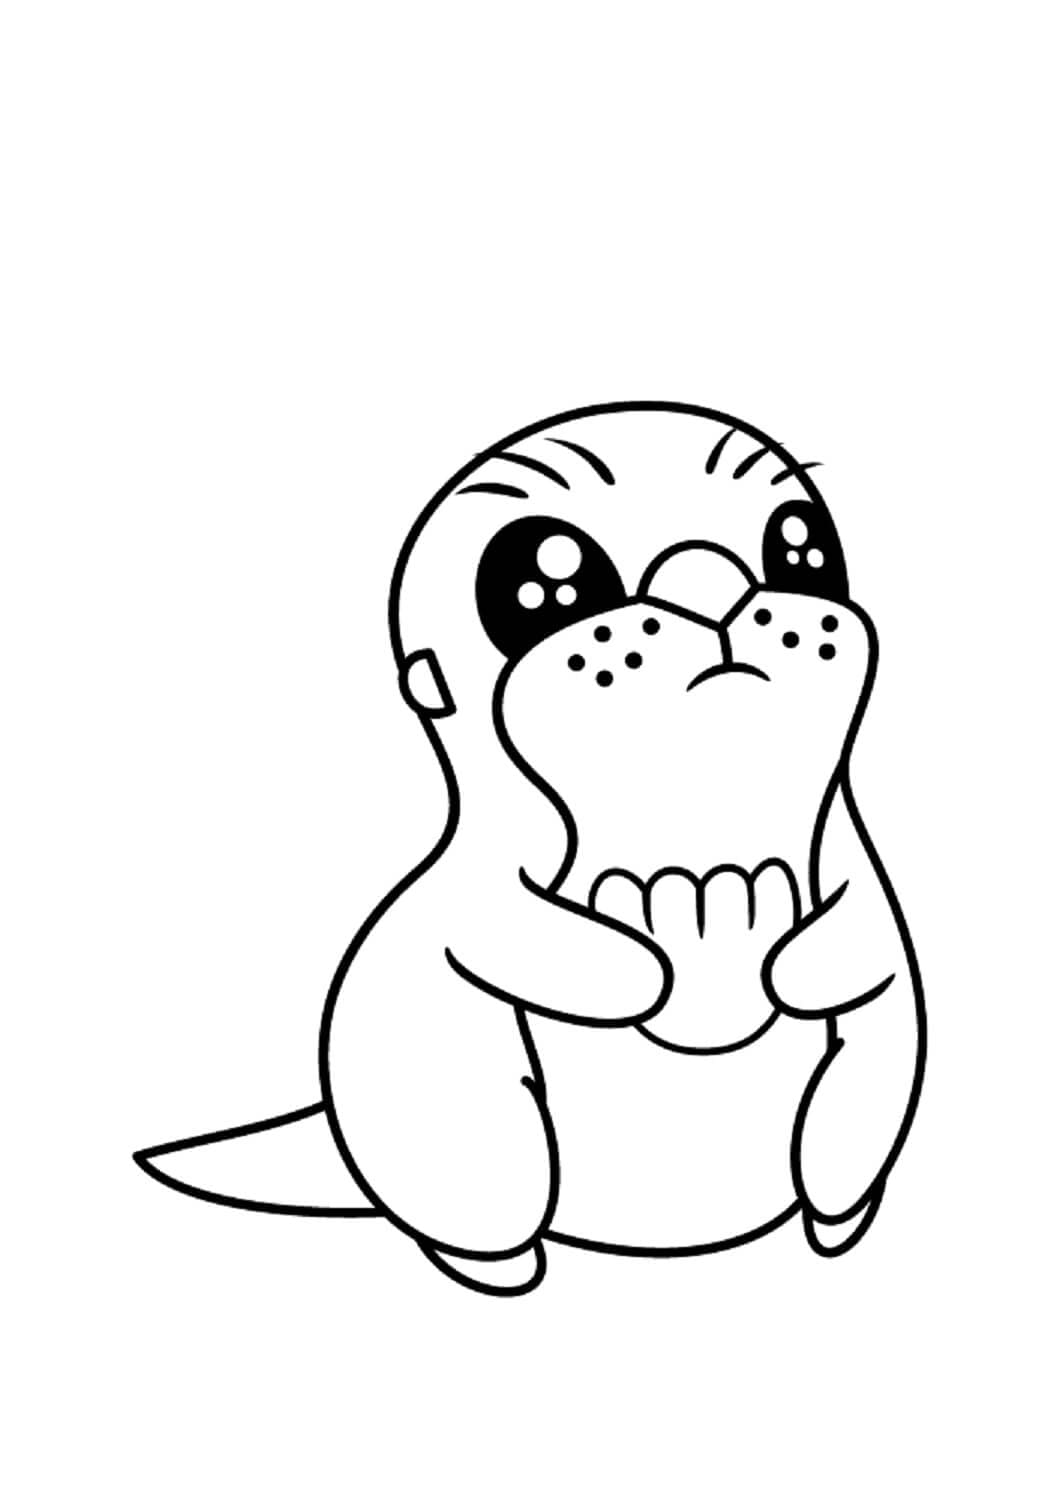 앉아 있는 귀여운 아기 수달